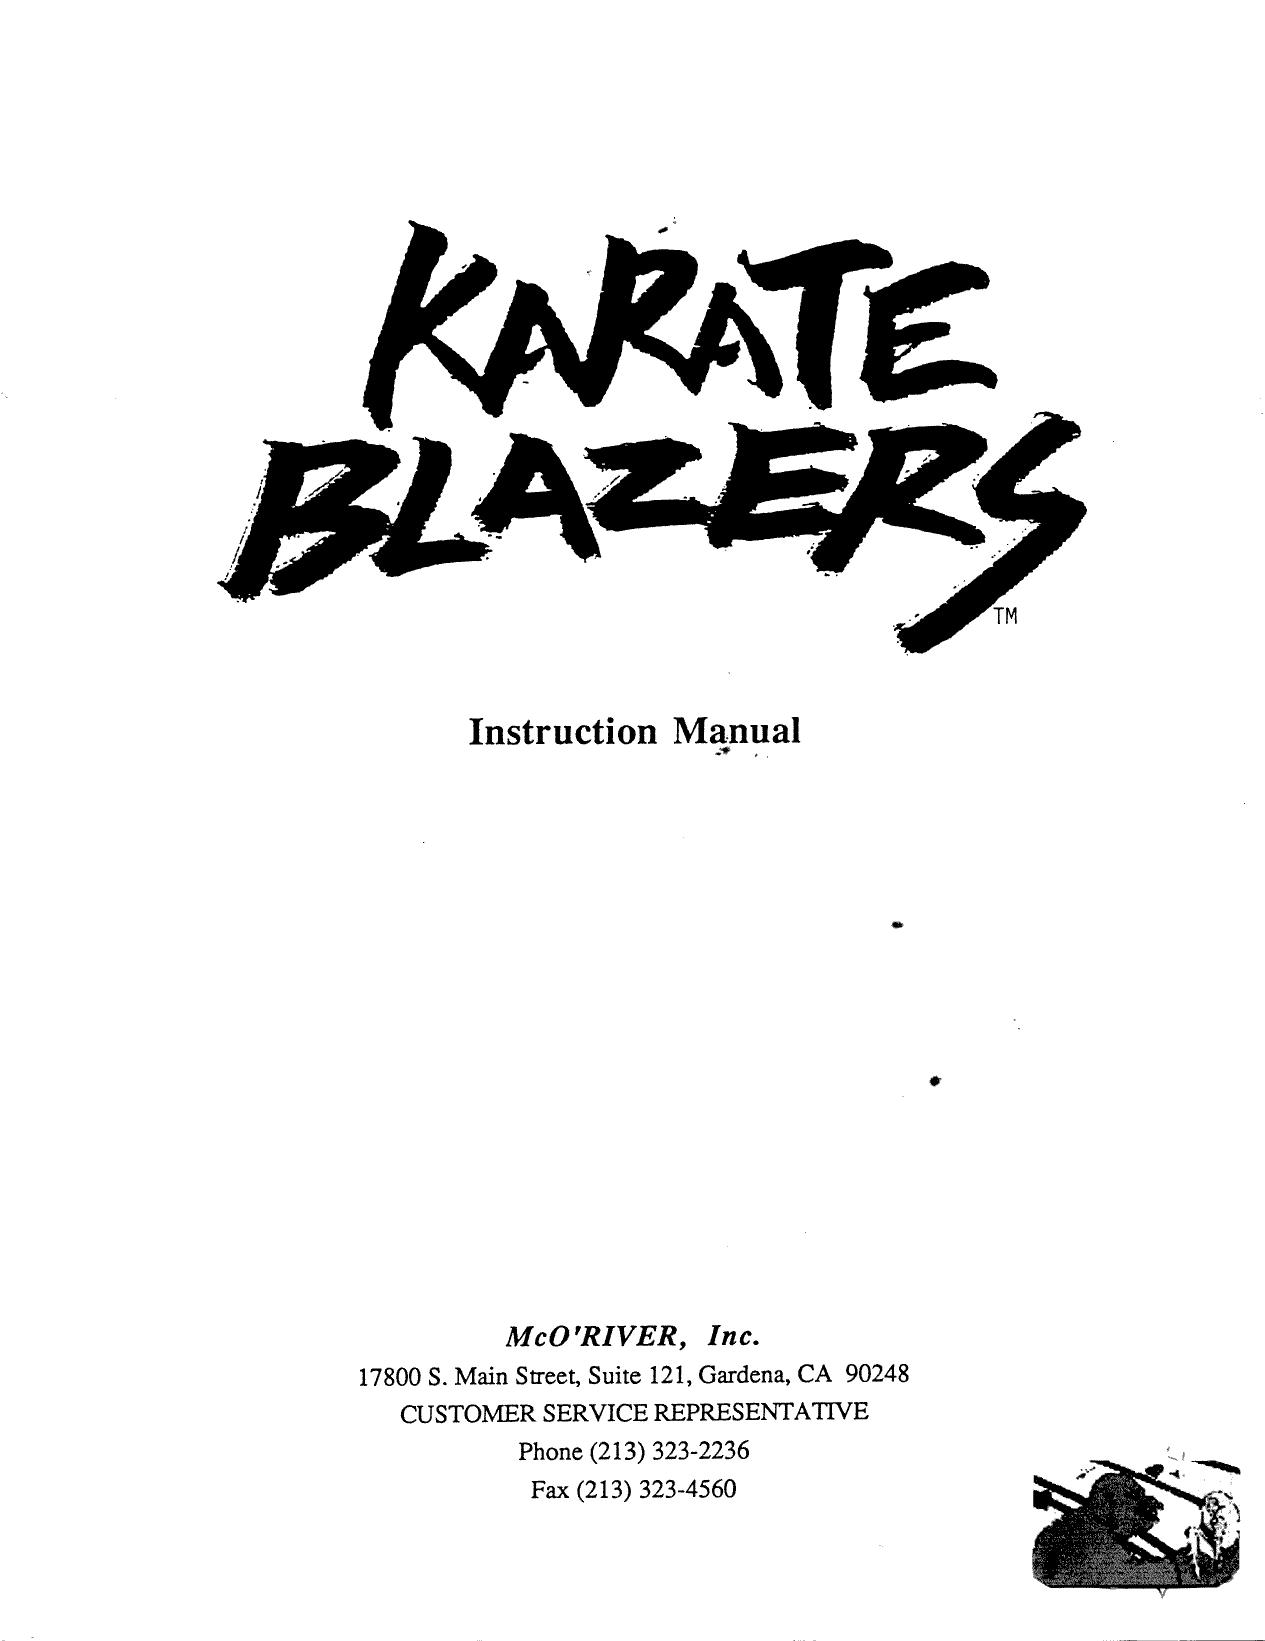 Karate Blazers.man